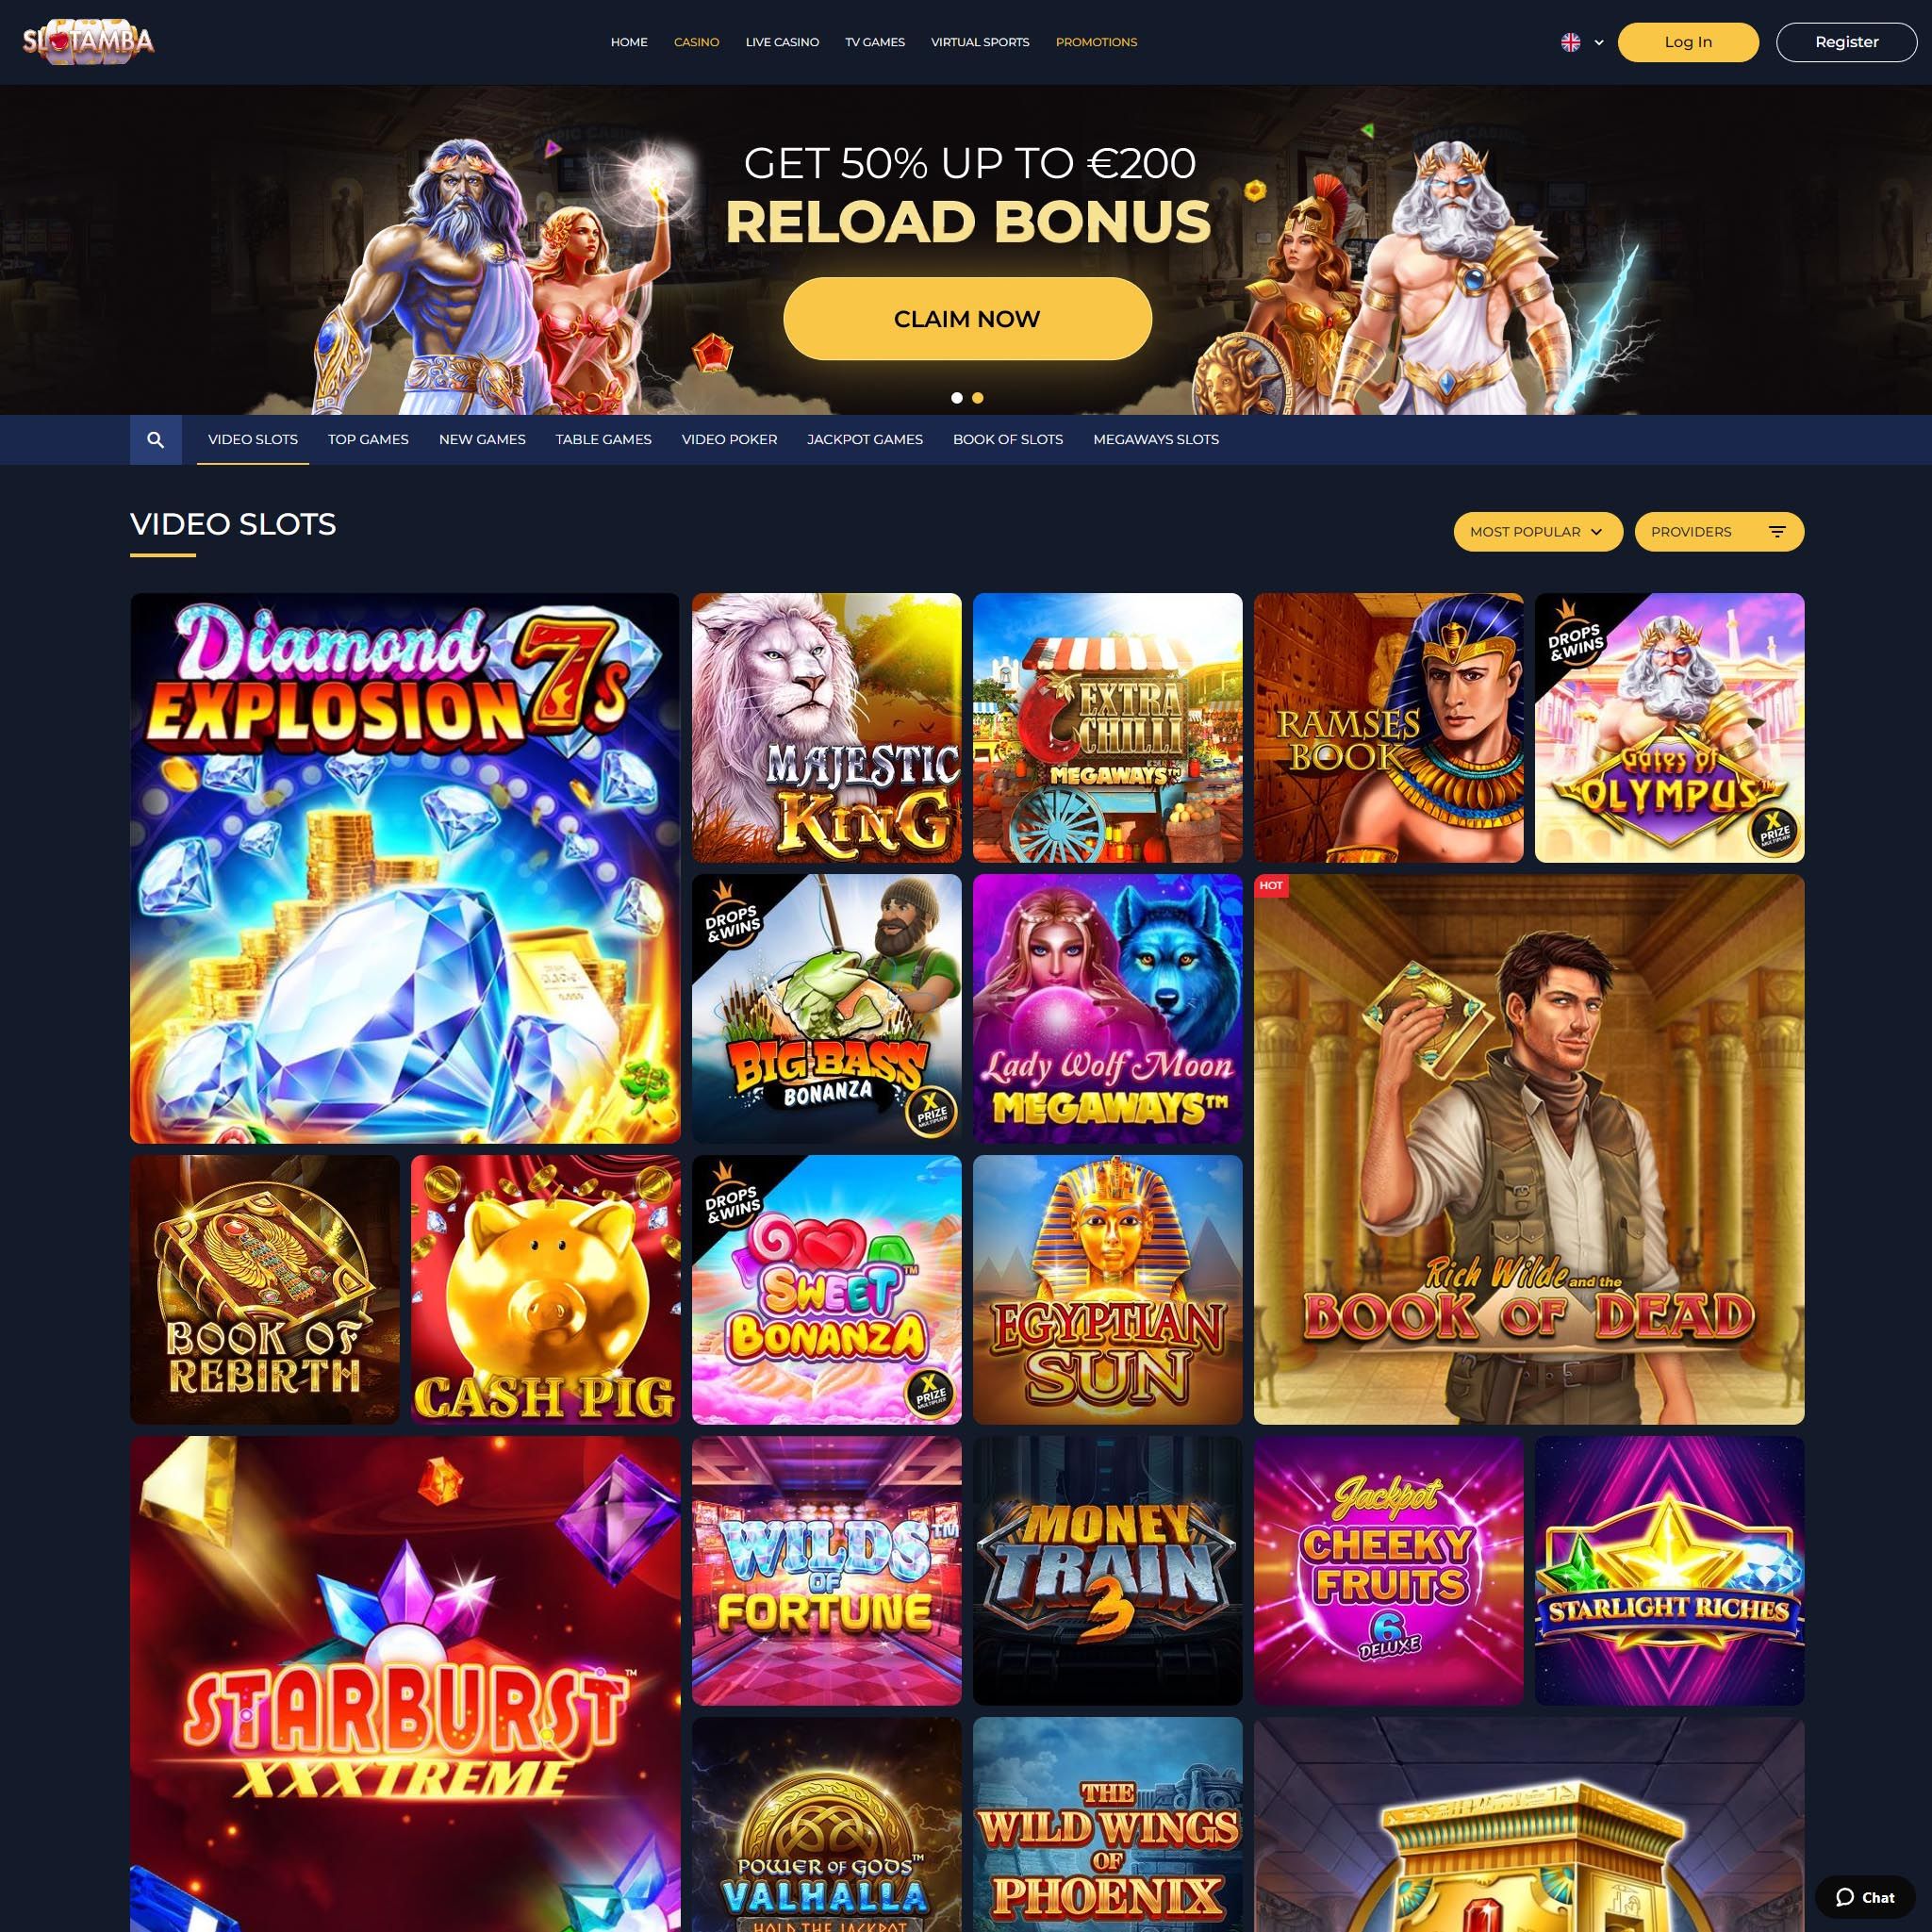 Pelaa netticasino Slotamba Casino voittaaksesi oikeaa rahaa – oikean rahan online casino! Vertaa kaikki nettikasinot ja löydä parhaat casinot Suomessa.